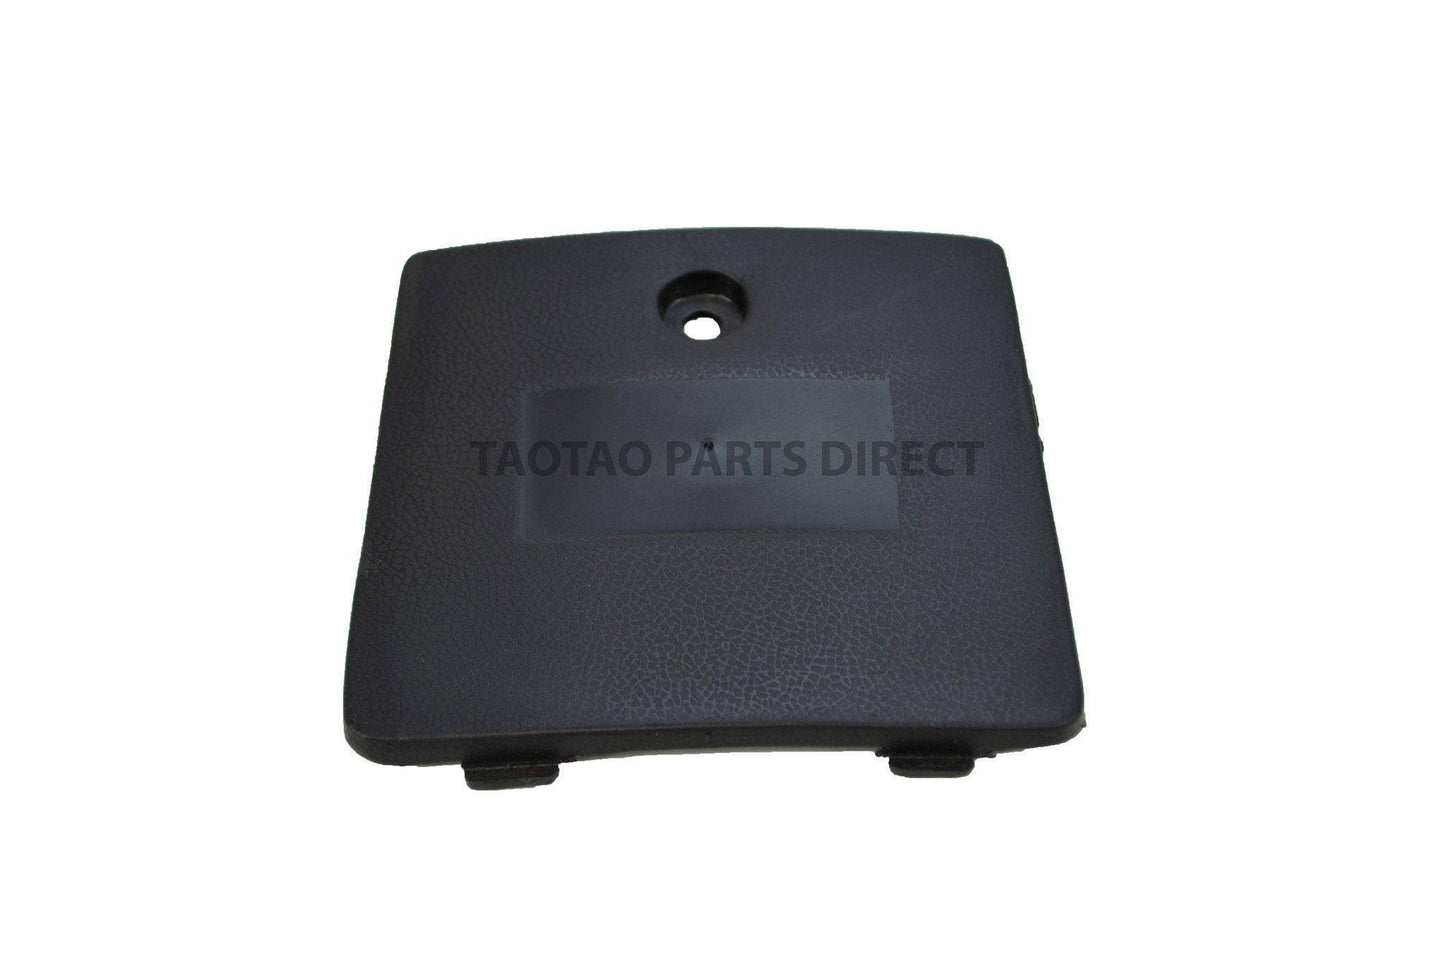 Powermax 150 Access Door - TaoTao Parts Direct